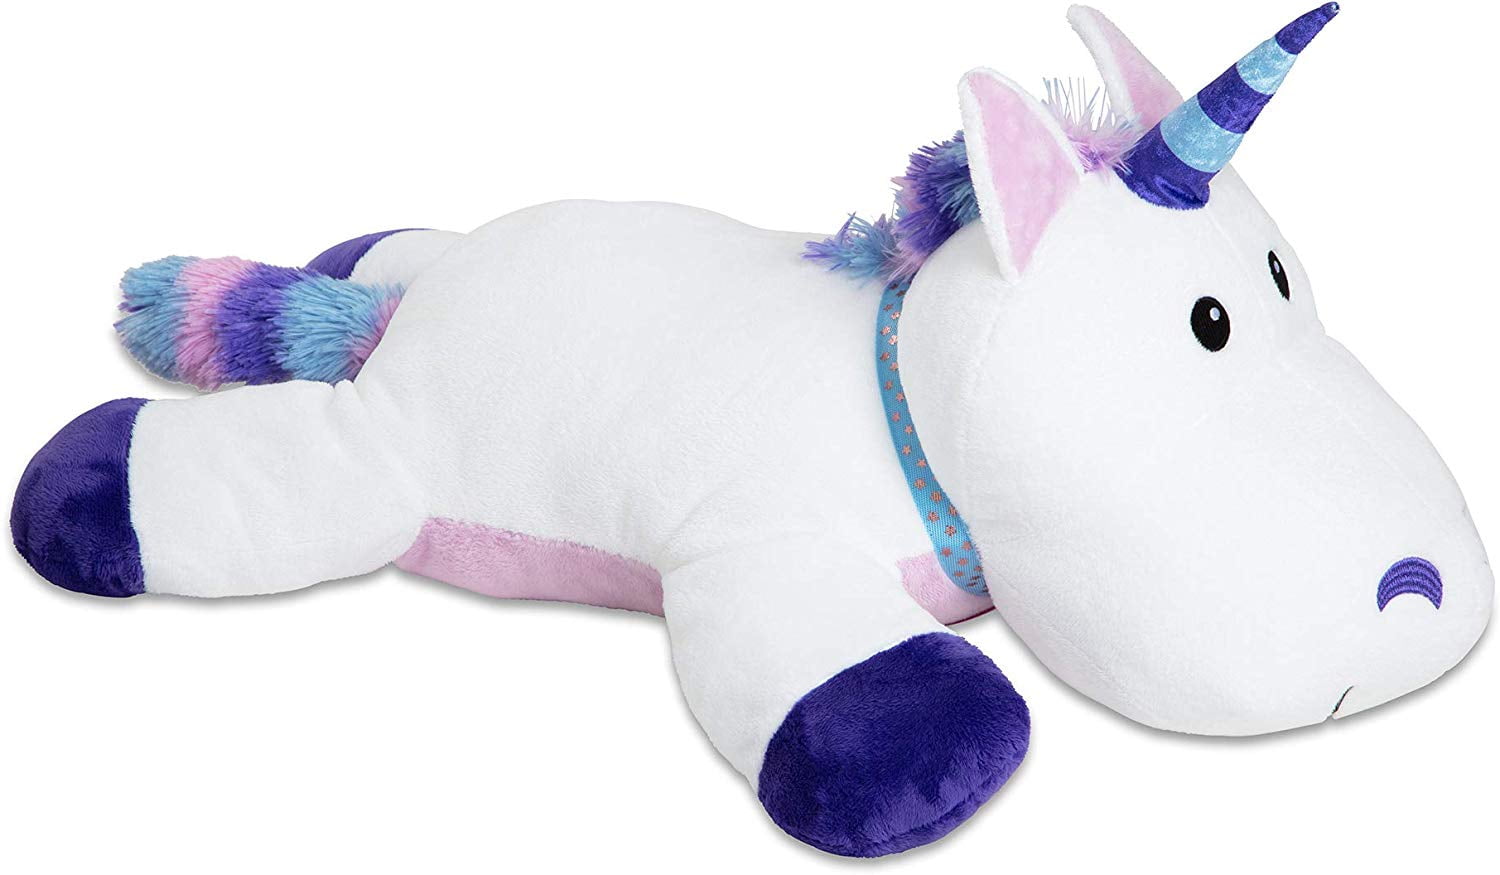 melissa & doug giant unicorn stuffed animal